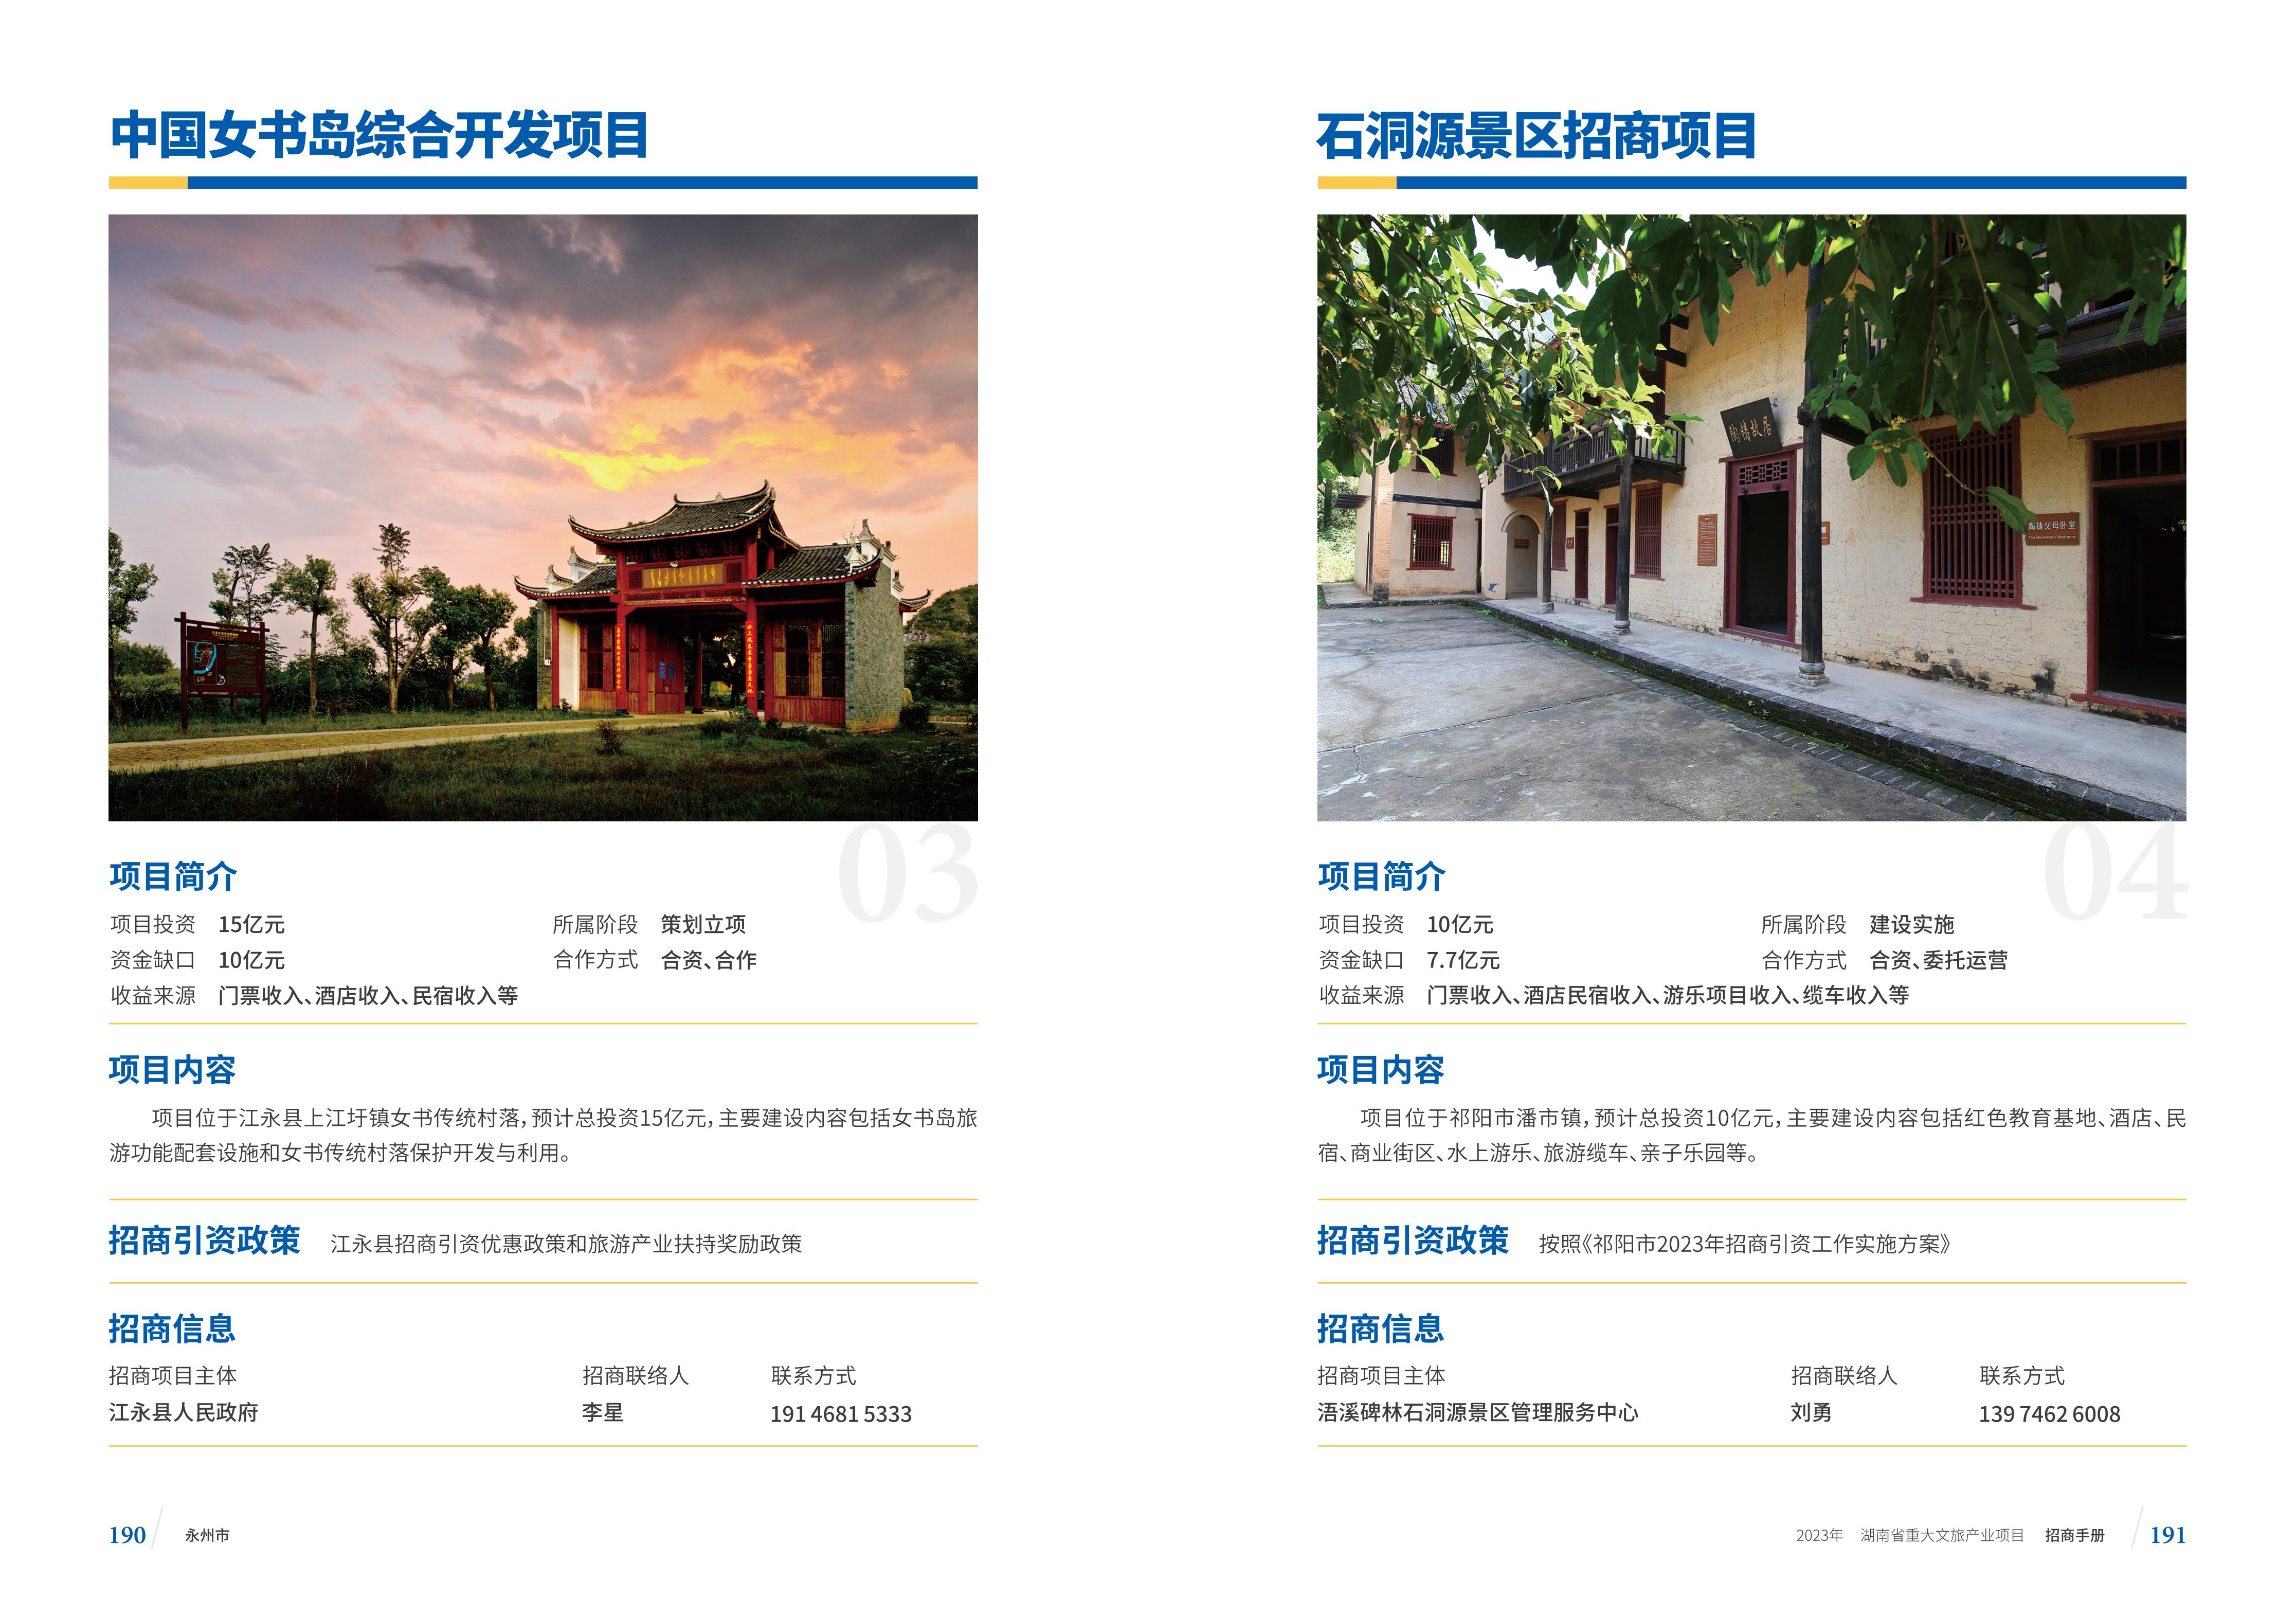 湖南省重大文旅产业项目招手册线上链接版_103.jpg